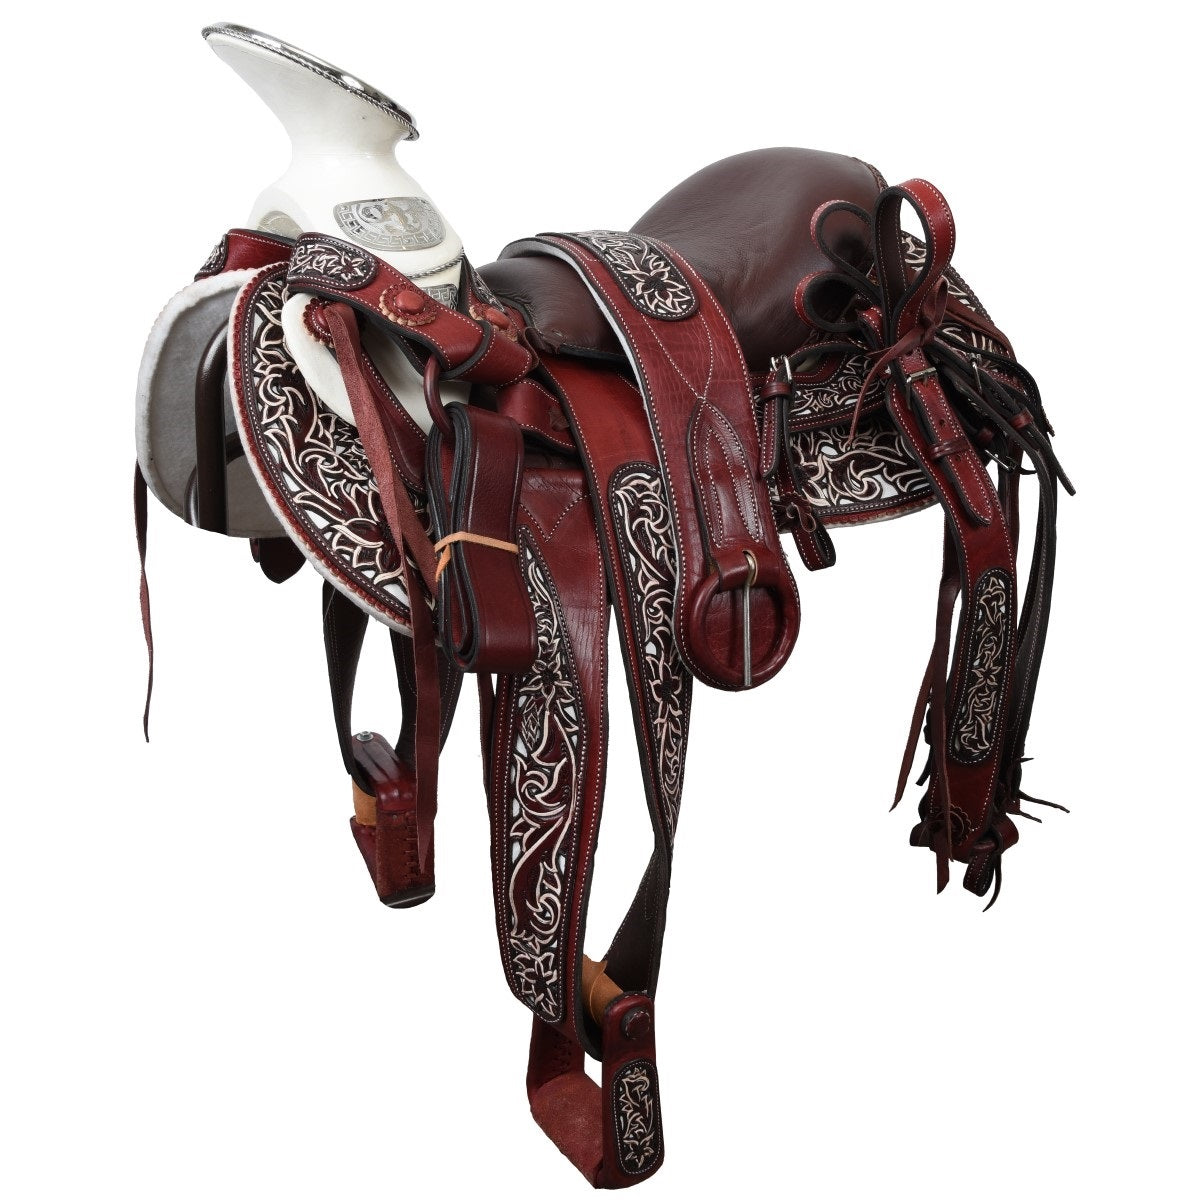 Silla de Montar para Caballo TM-WD1063-1031 Wine - Horse Saddle